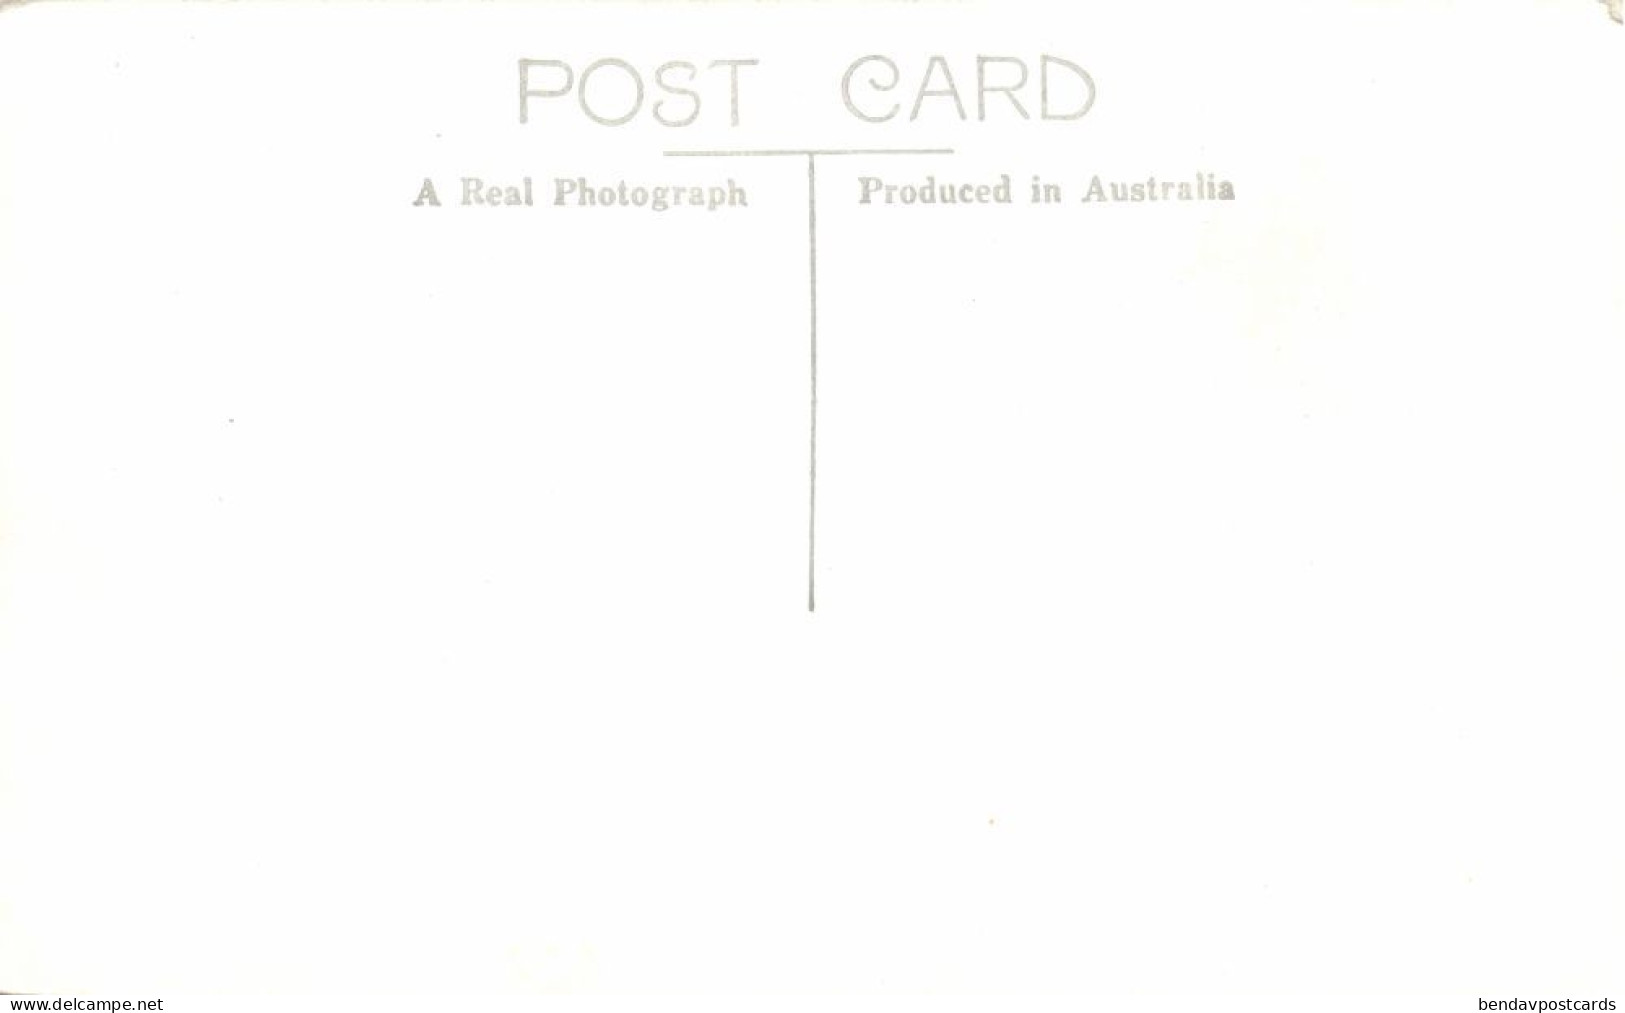 Australia, Group Of Armed Aboriginals, Body Painting (1950s) Rose RPPC Postcard - Aborigines